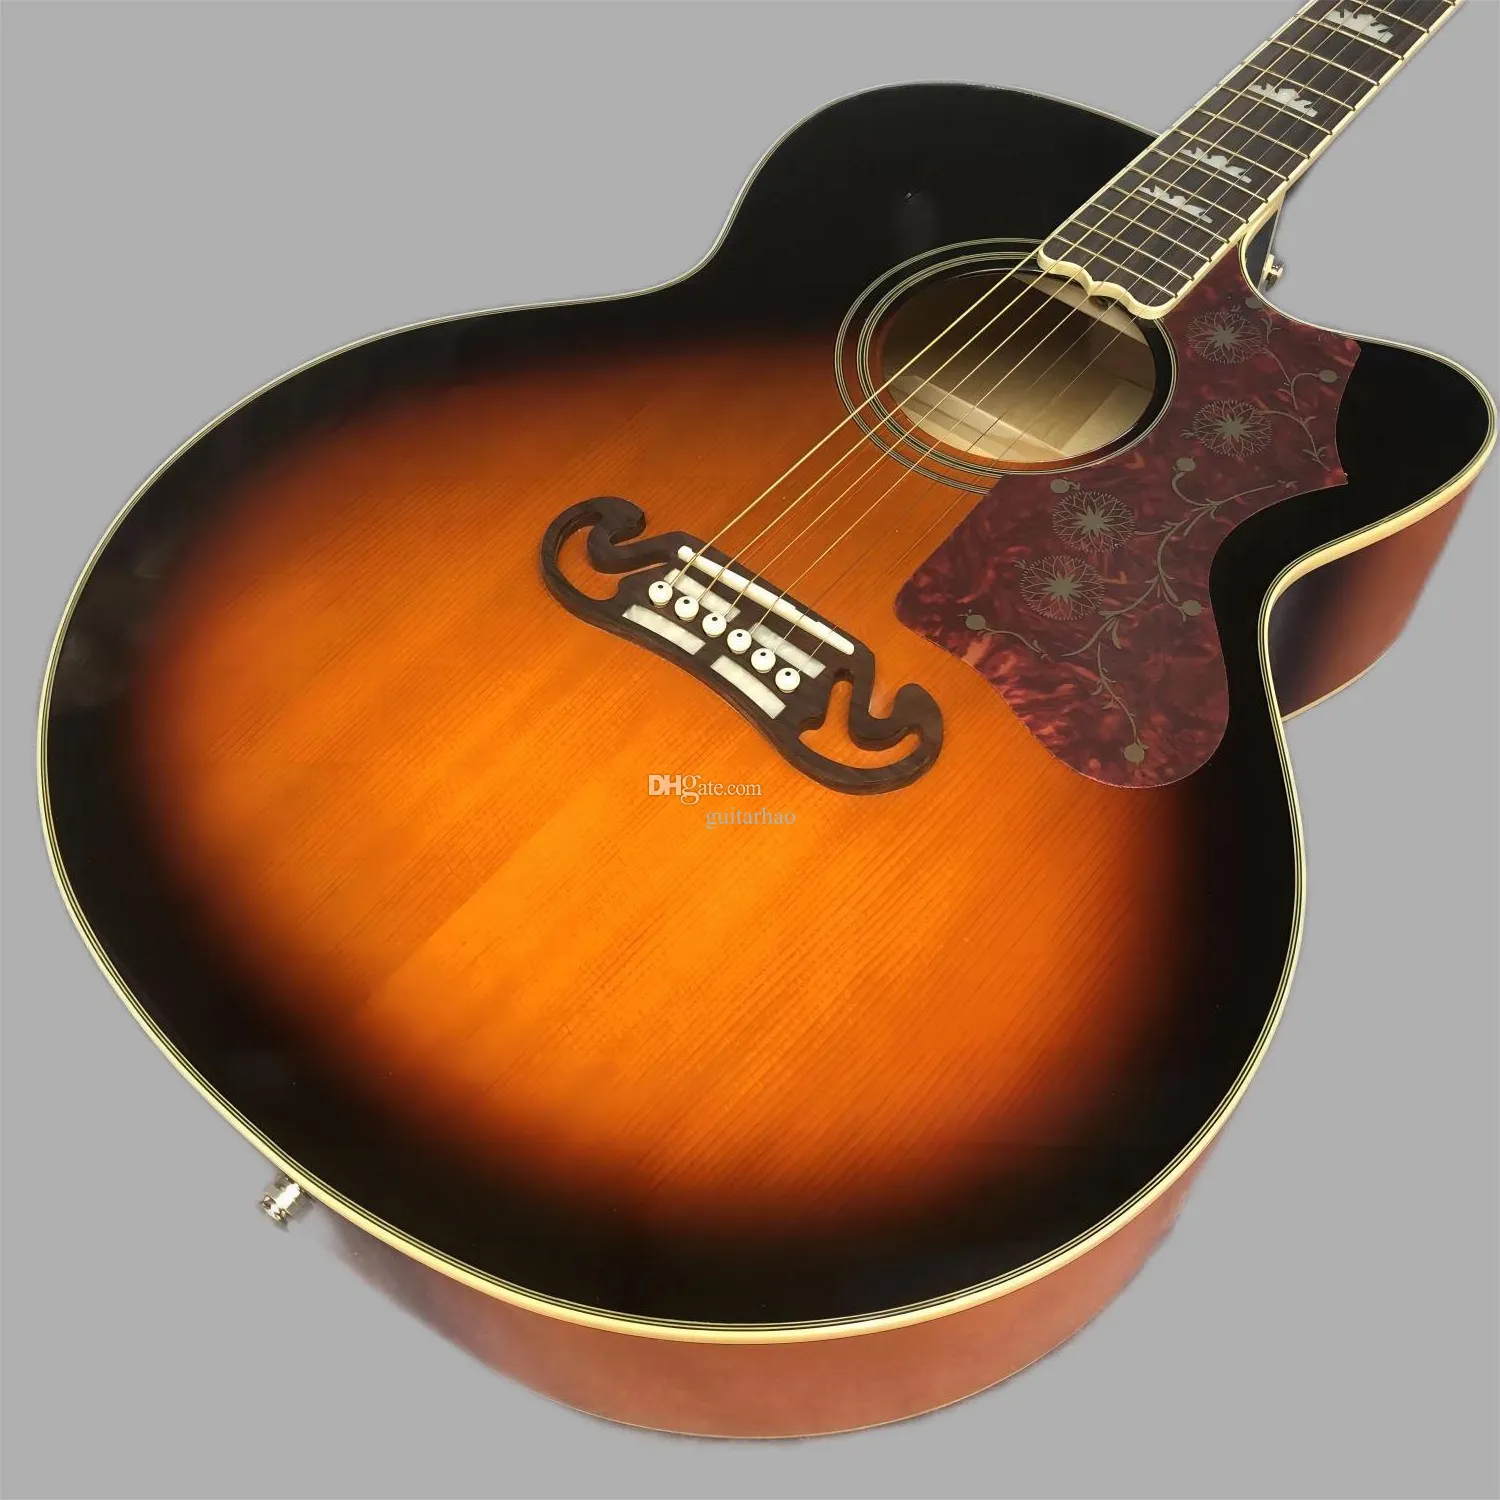 migliore chitarra acustica laccata Sunset J200 da 43 pollici 258